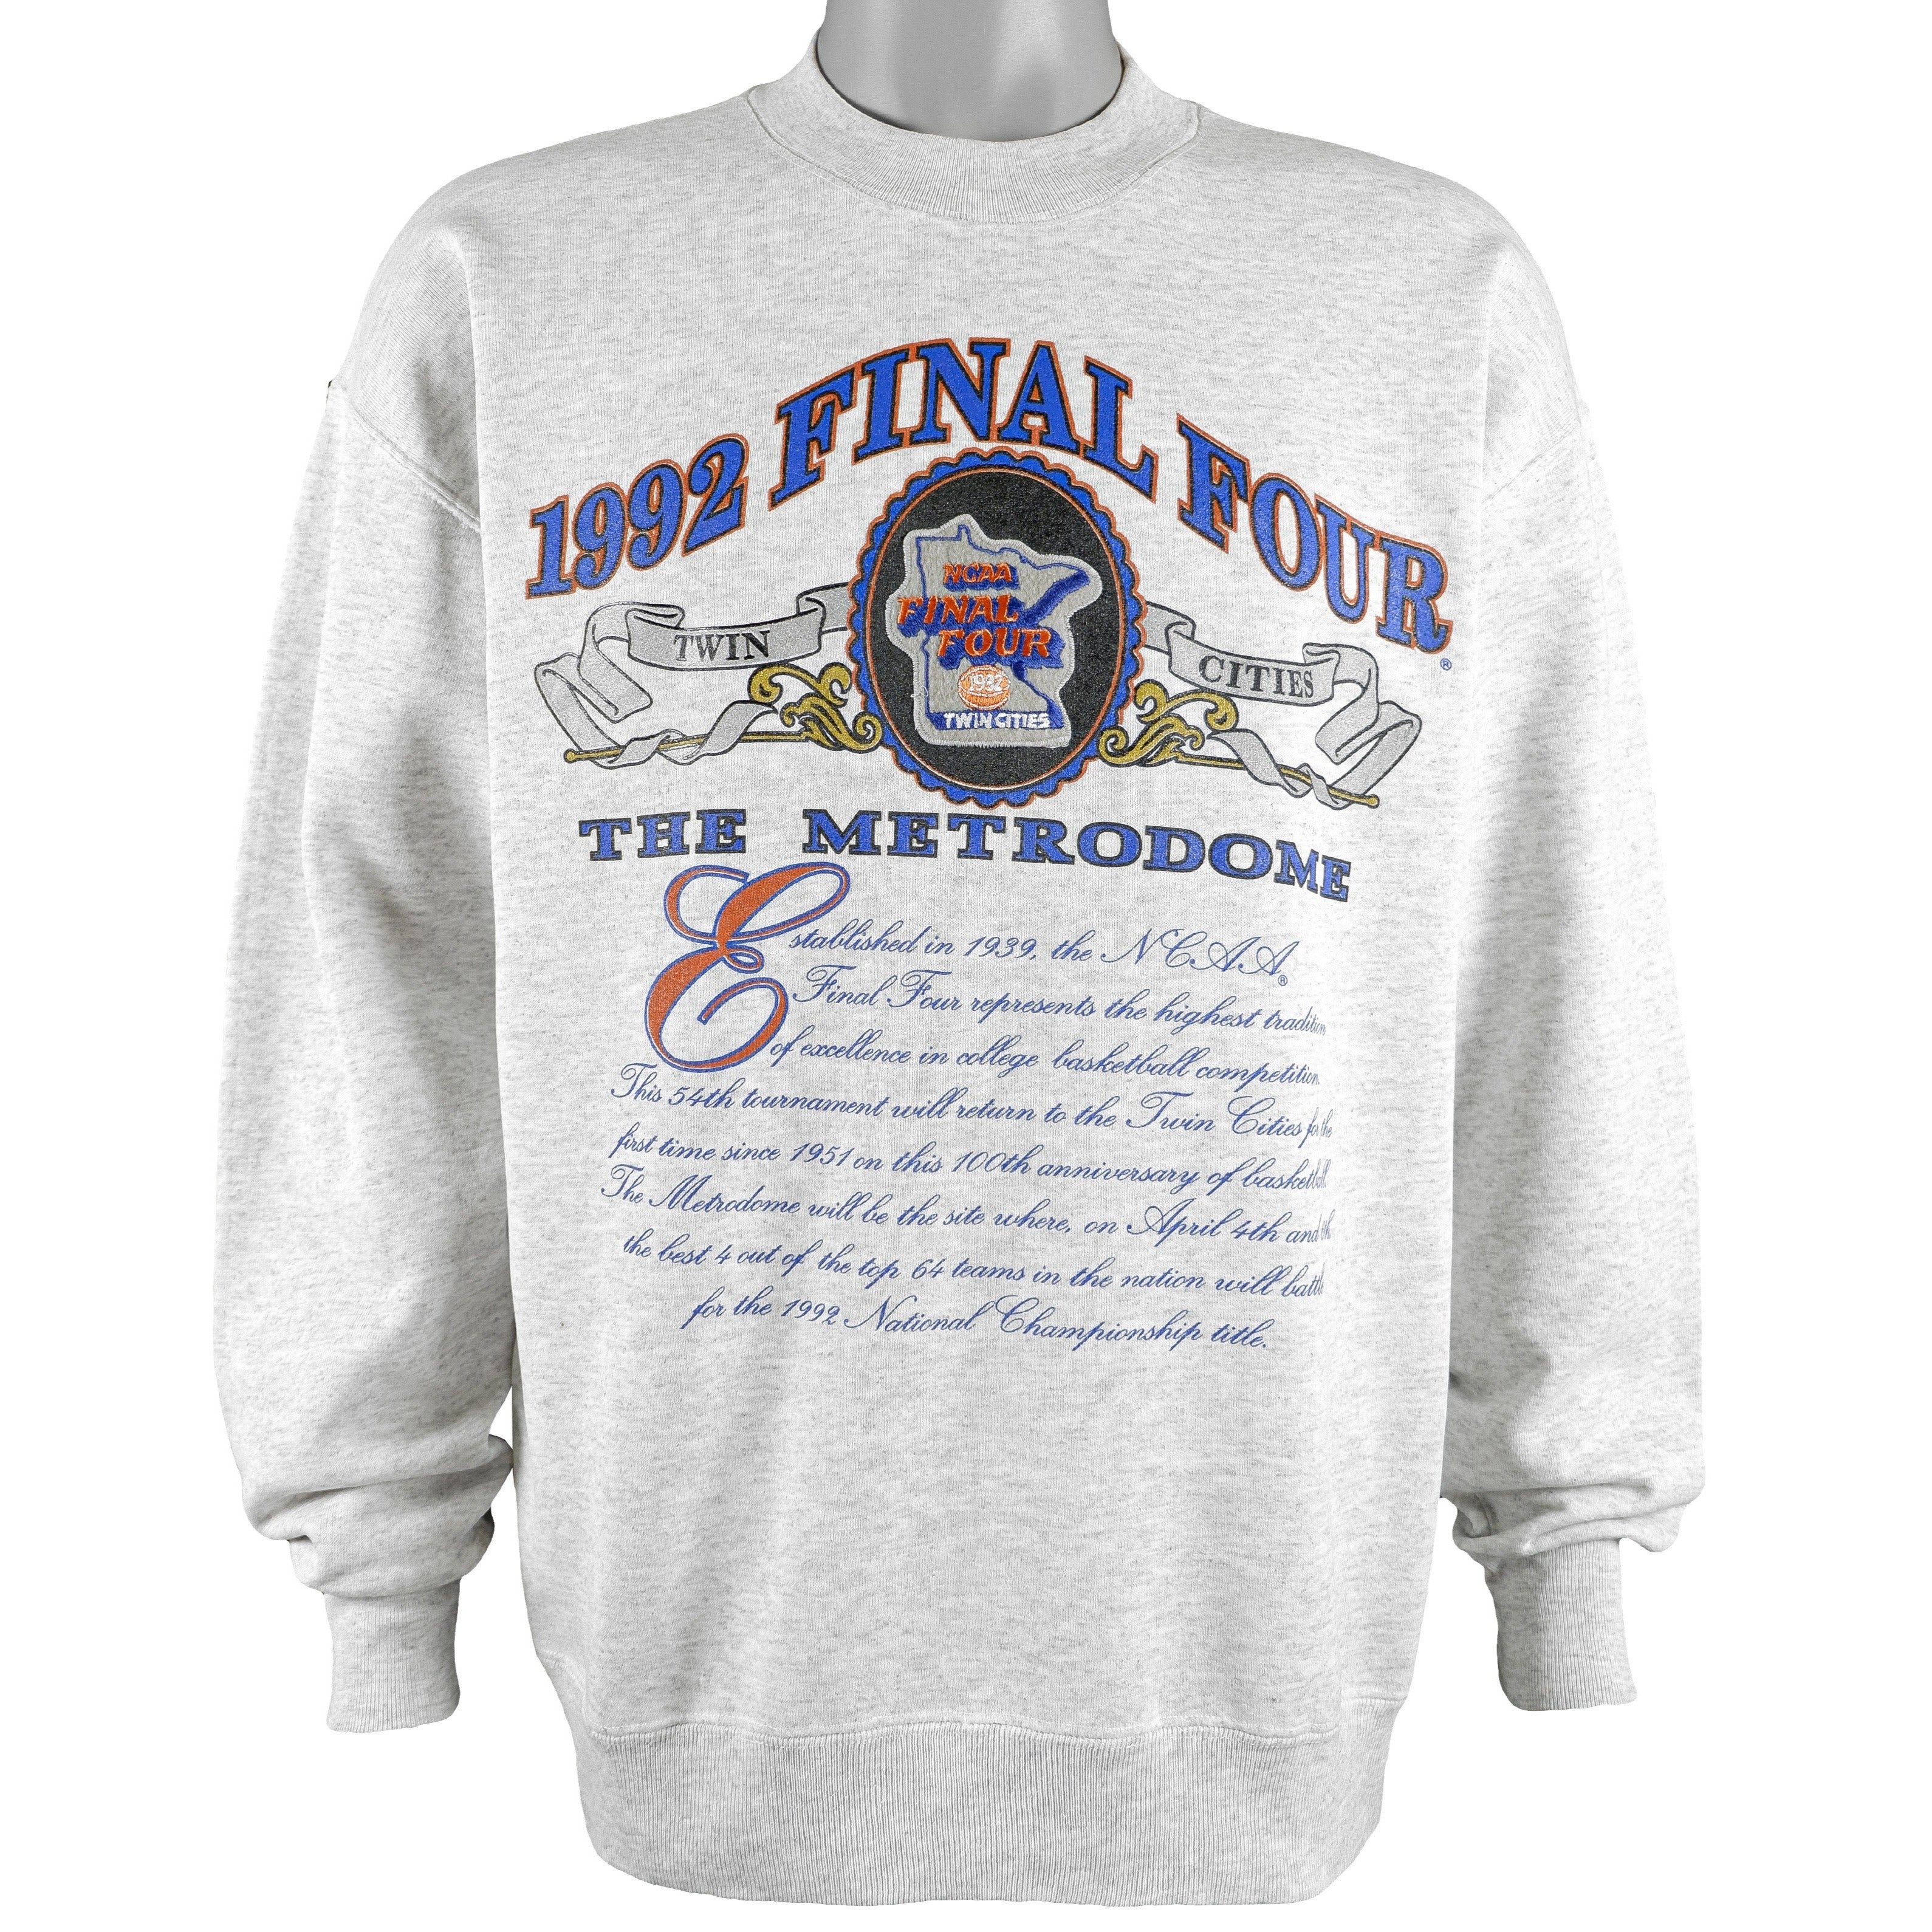 Unisex Vintage 1995 Pittsburgh Steelers Sweatshirt - The Vintage Twin